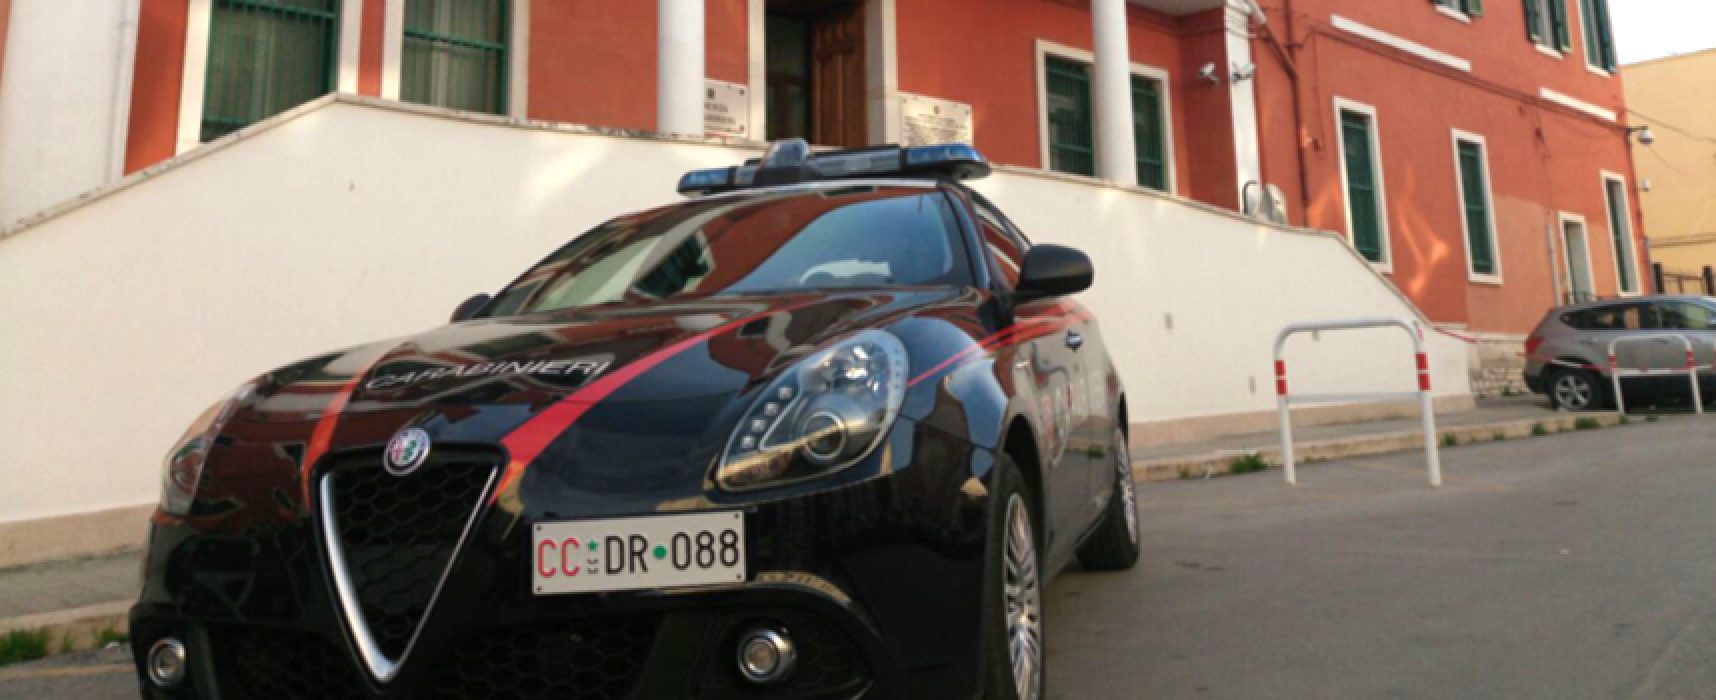 Carabinieri arrestano 28enne pusher biscegliese